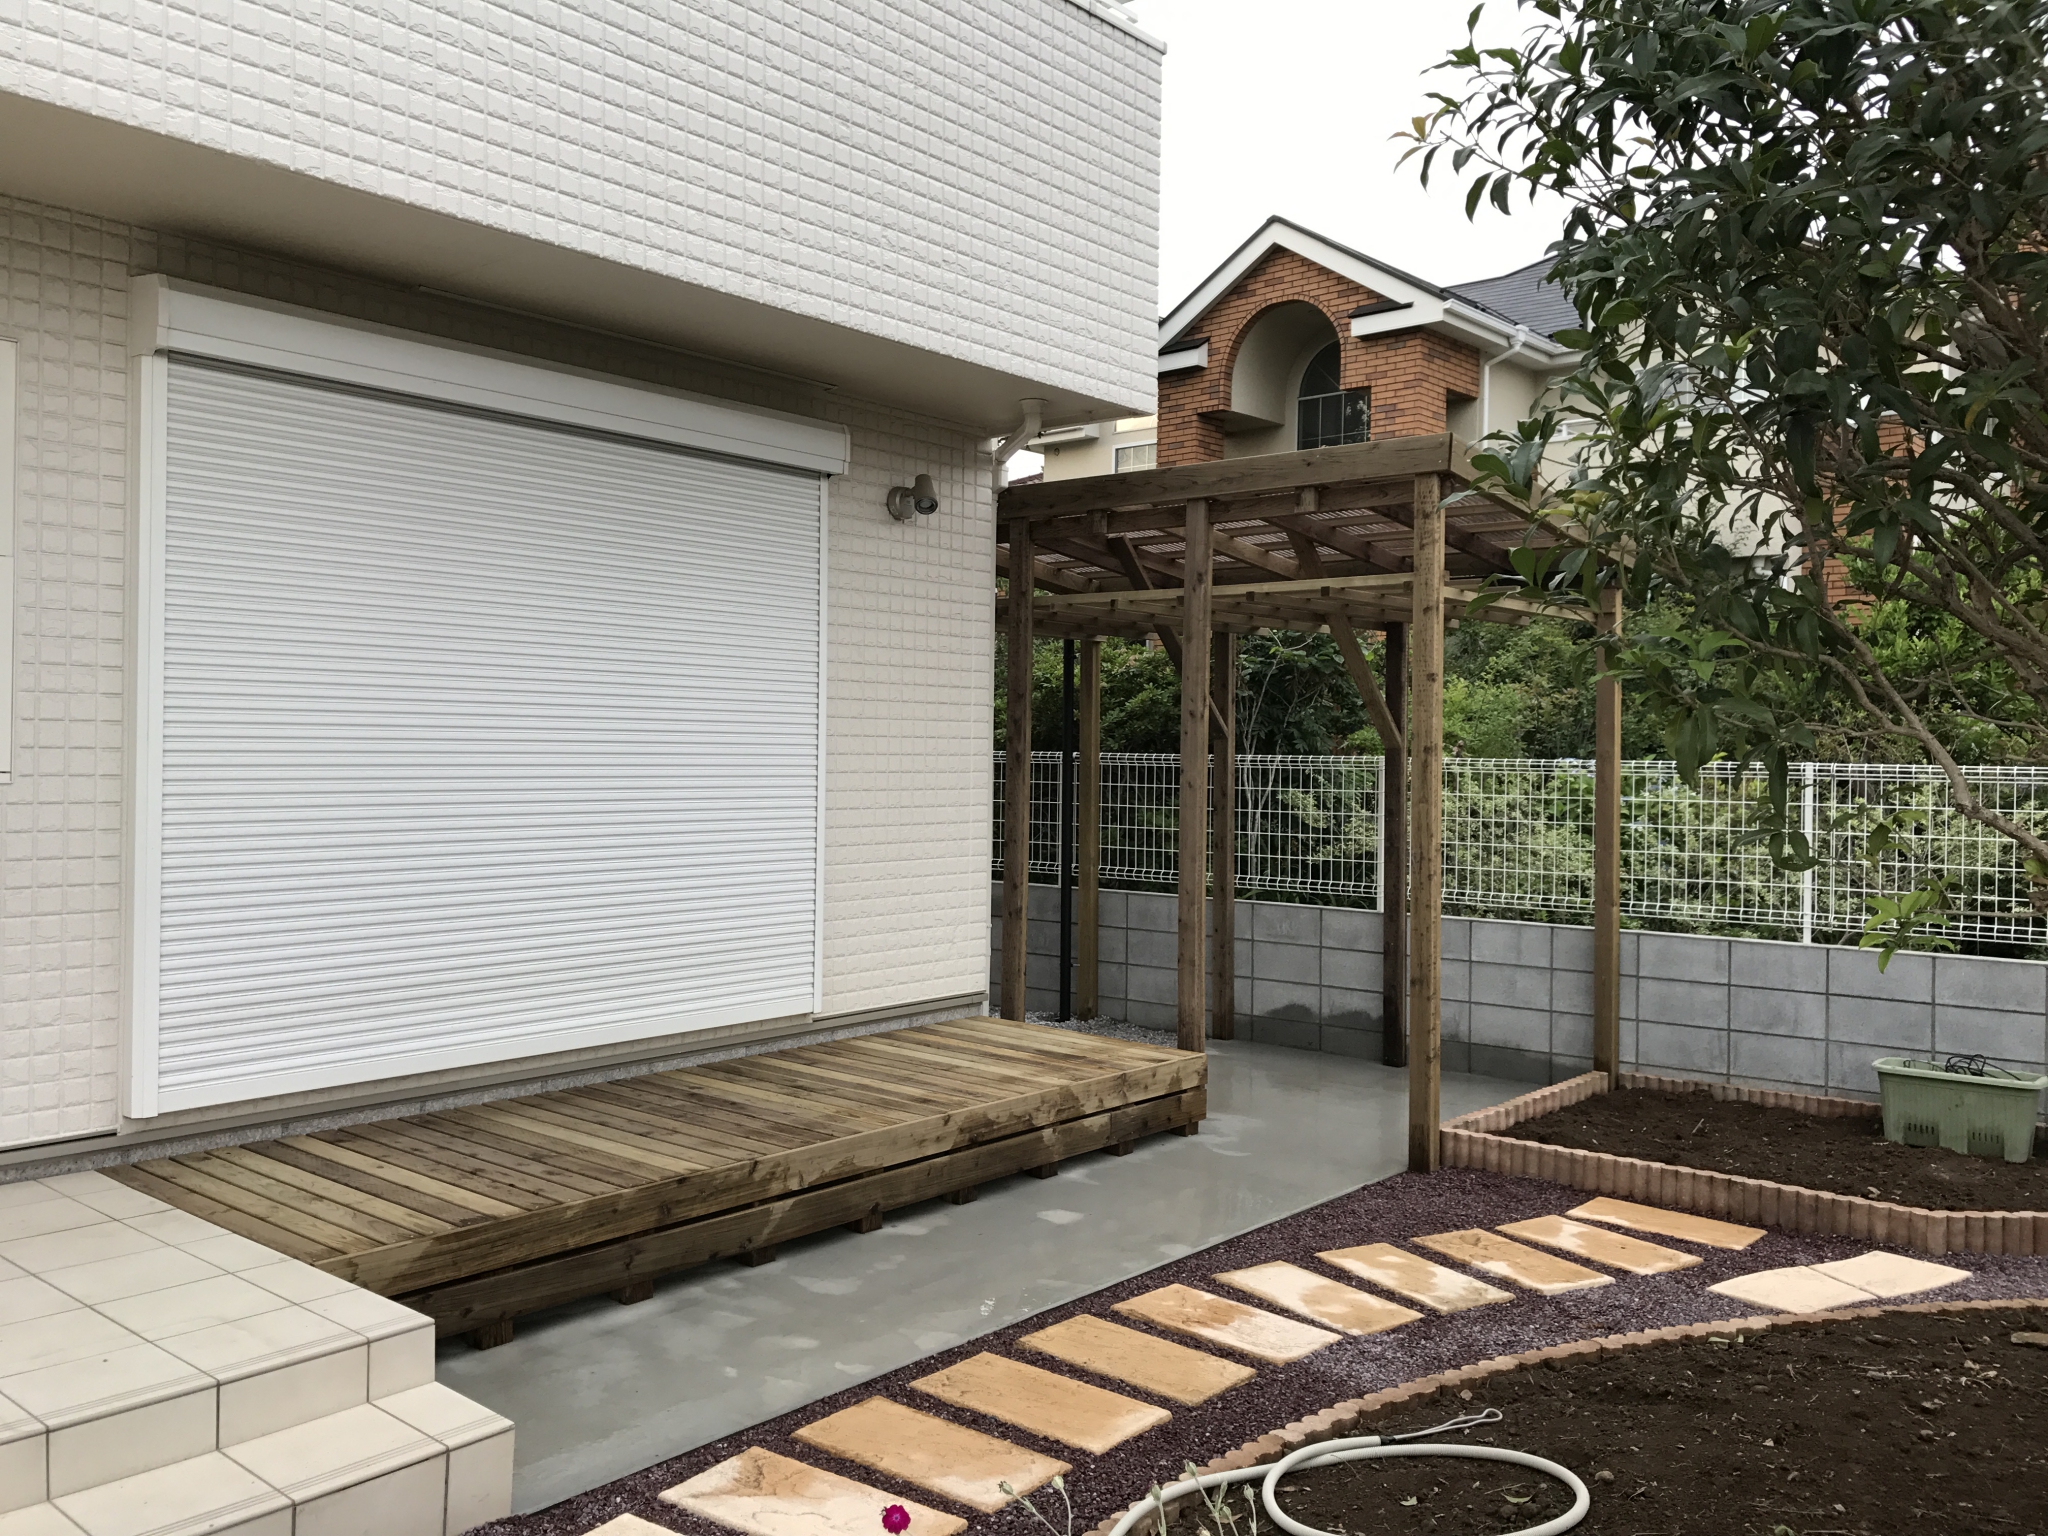 菜園に隣接した「ぶどう棚付きサイクルポート」 | 埼玉県北本市のK様邸の外構工事・エクステリア